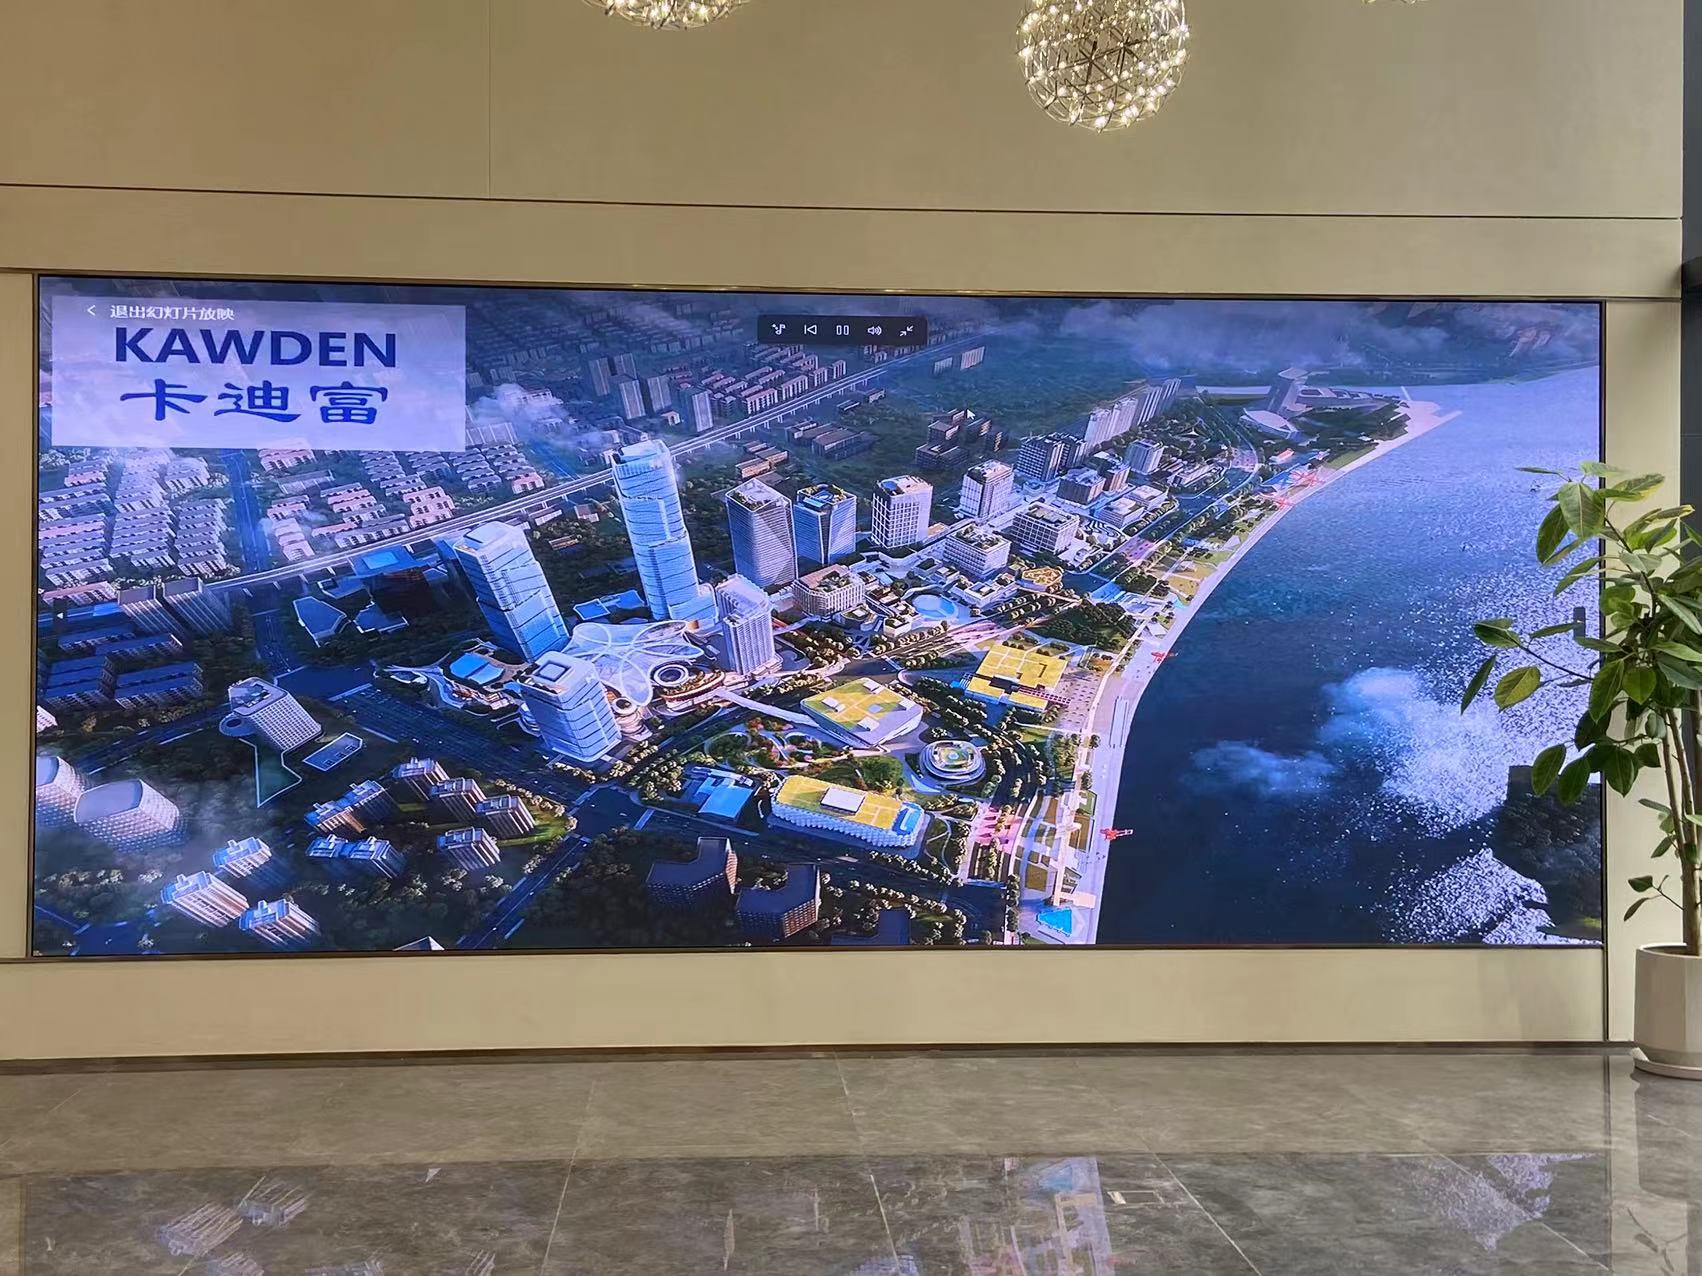 广州华鼎建设有限公司P2.5LED显示屏6.08x2.56米大屏